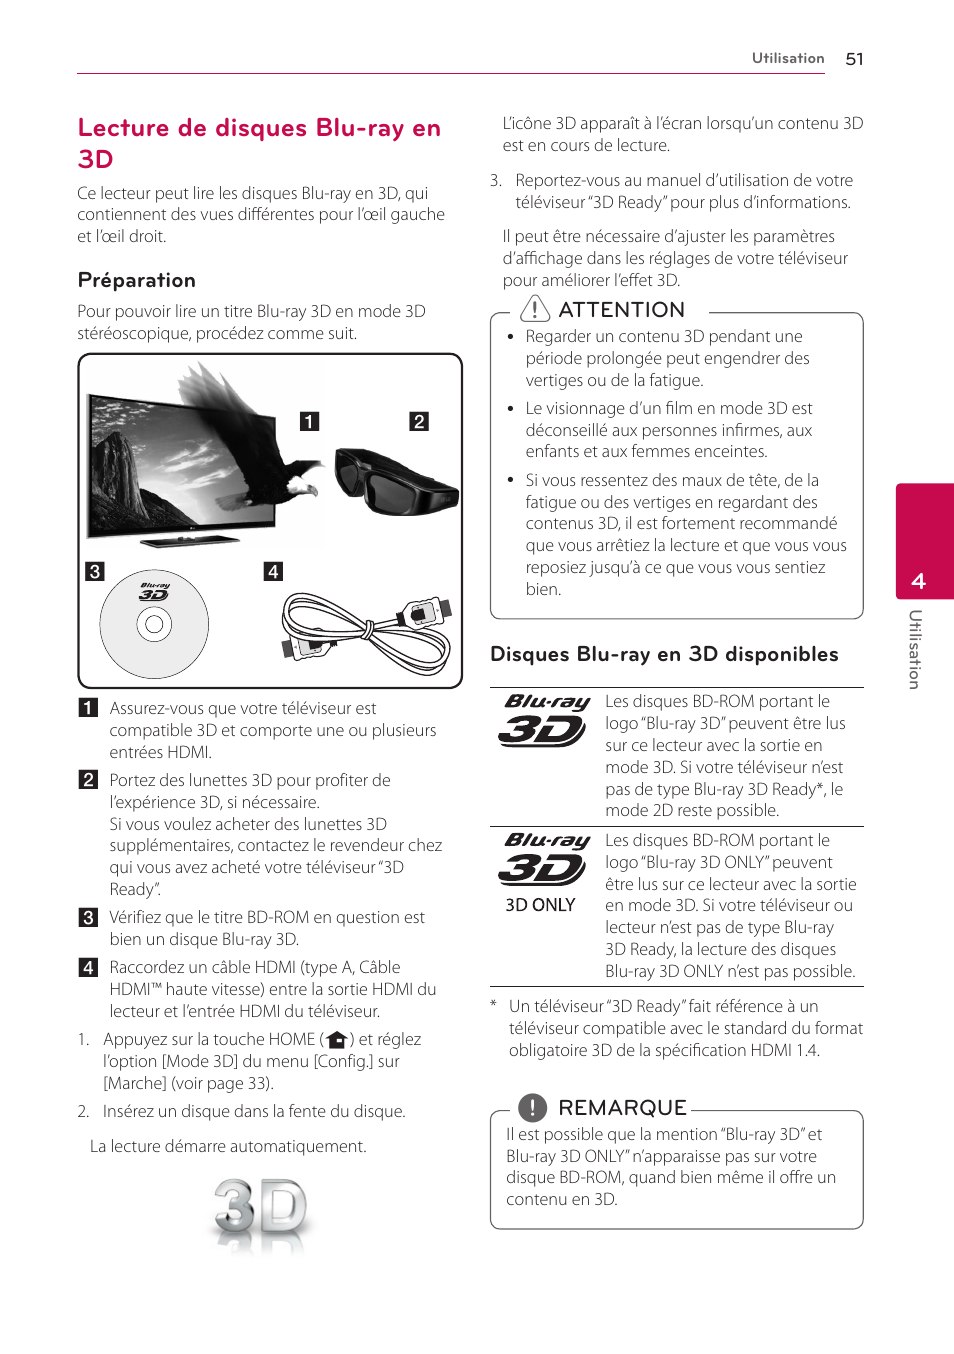 Lecture de disques blu-ray en 3d | LG HR922D Manuel d'utilisation | Page 51 / 94